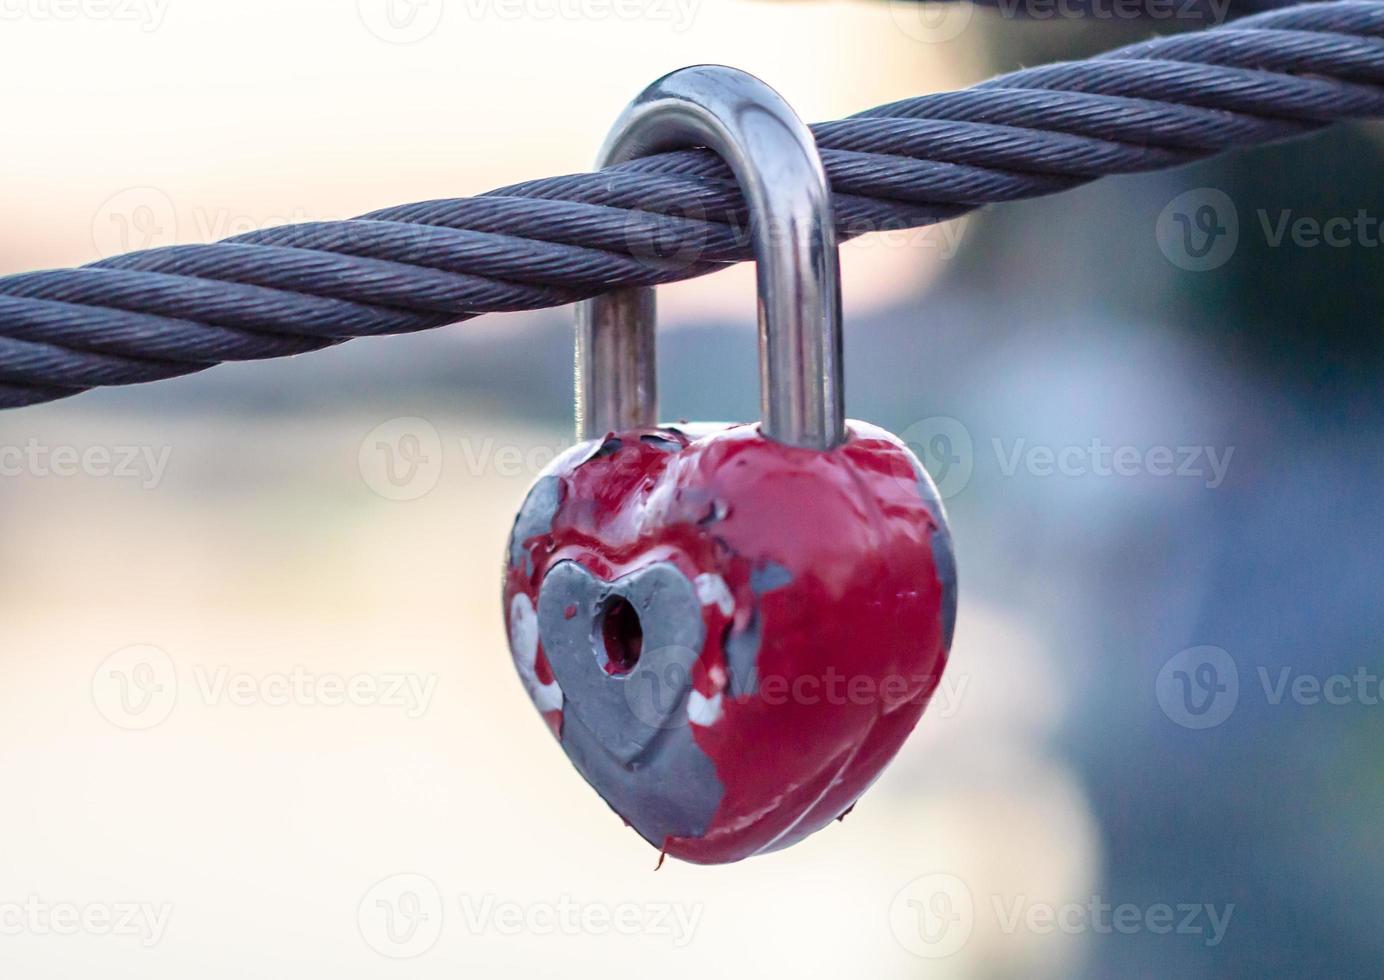 rot schälendes Hochzeitsschloss an einem Seil mit einem Schlüsselloch foto